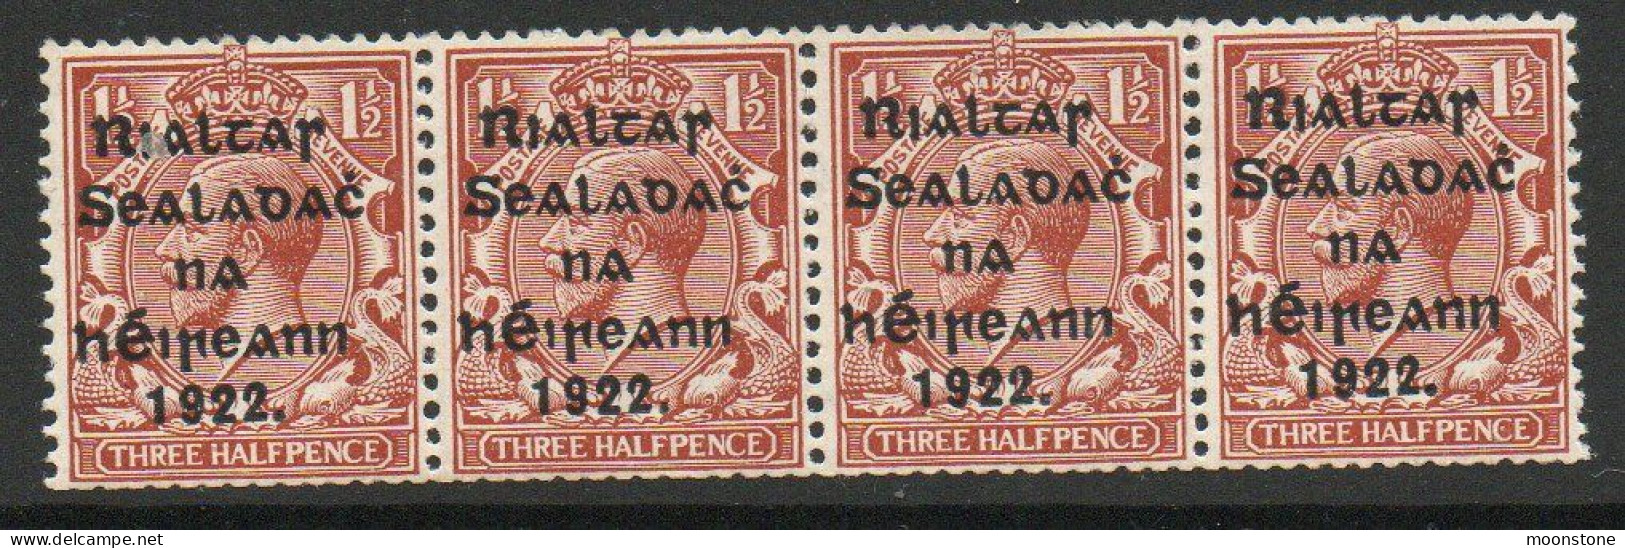 Ireland 1922 Harrison Rialtas Overprint 1½d Coil Strip Of 4, MNH, SG 28 - Ongebruikt